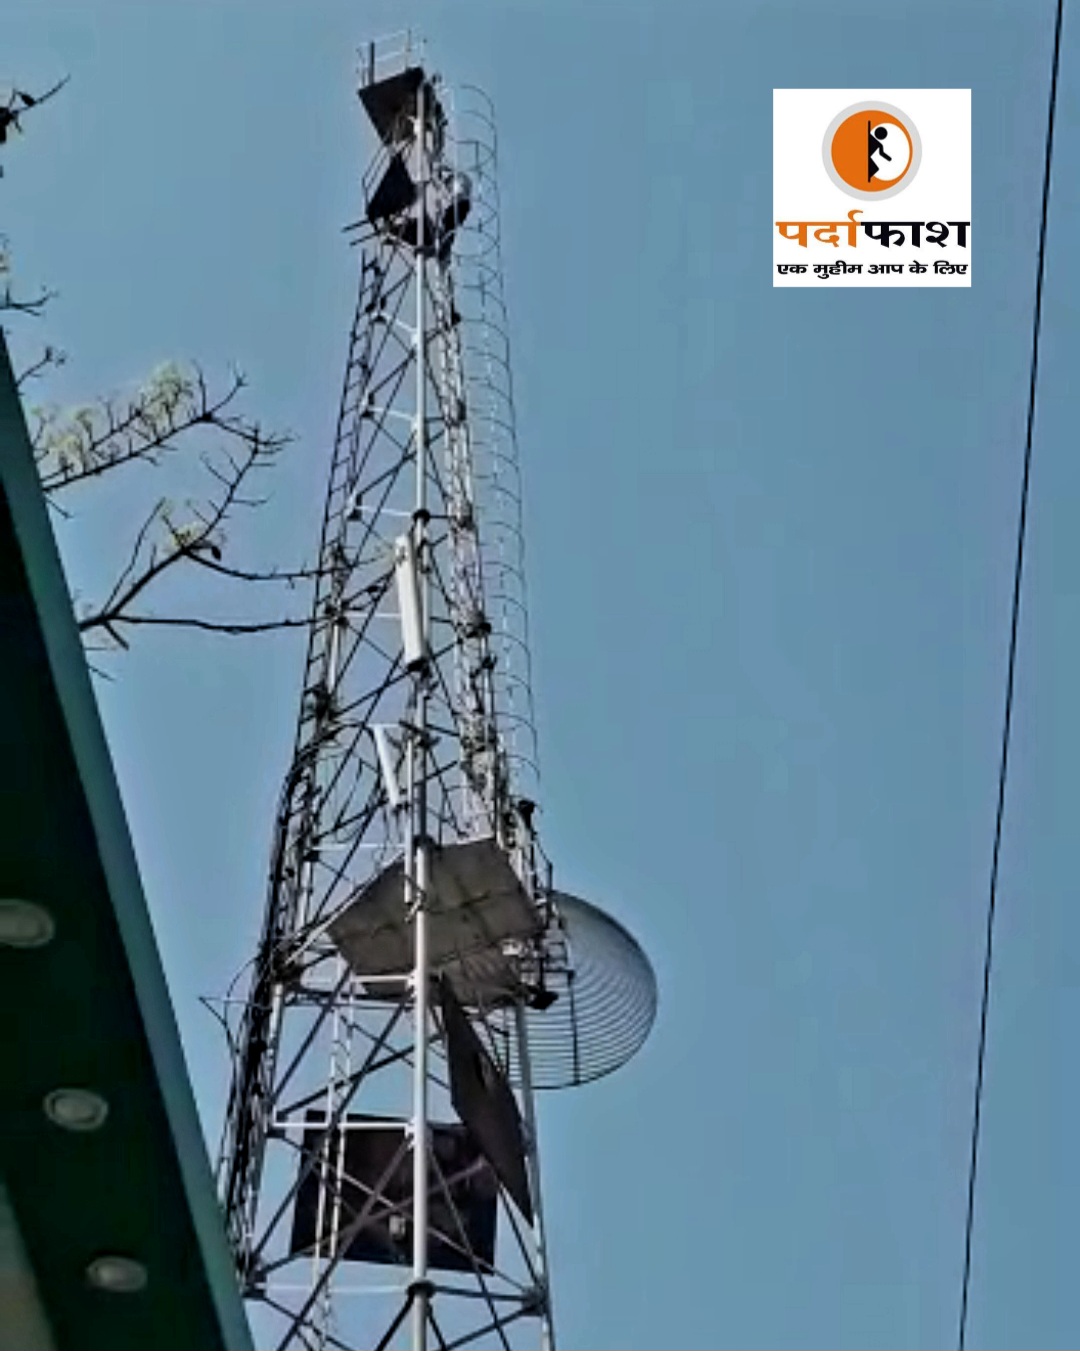 सोनौली:बीएसएनएल के टावर पर चढ़कर आत्महत्या की दे रहा धमकी,पहुंची पुलिस-वीडियो